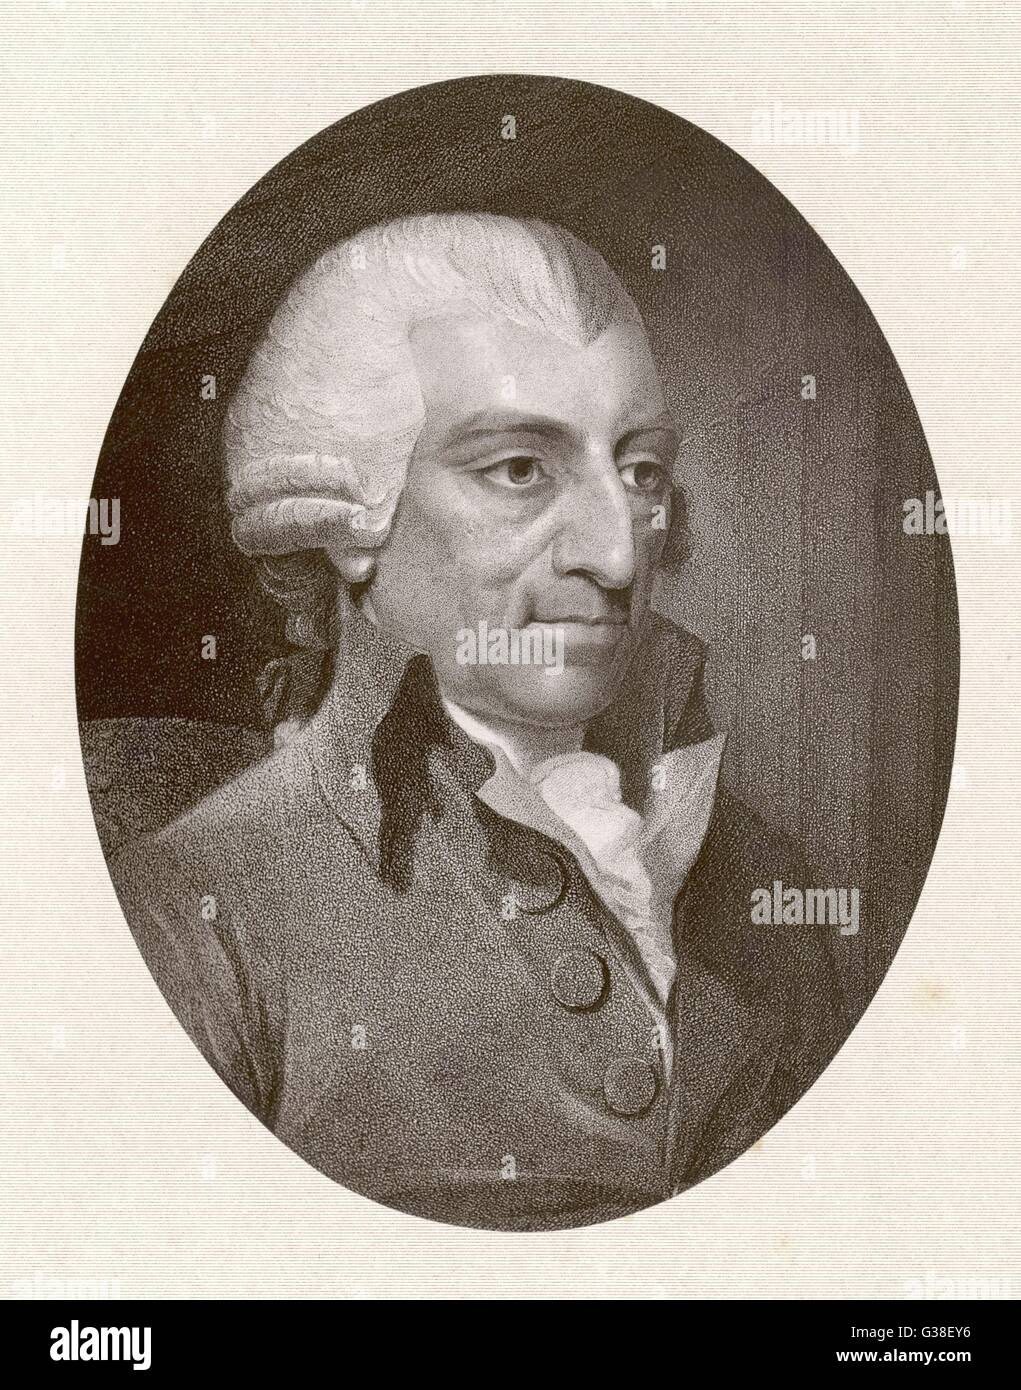 JOHN HOWARD  Prison reformer        Date: 1726 - 1790 Stock Photo